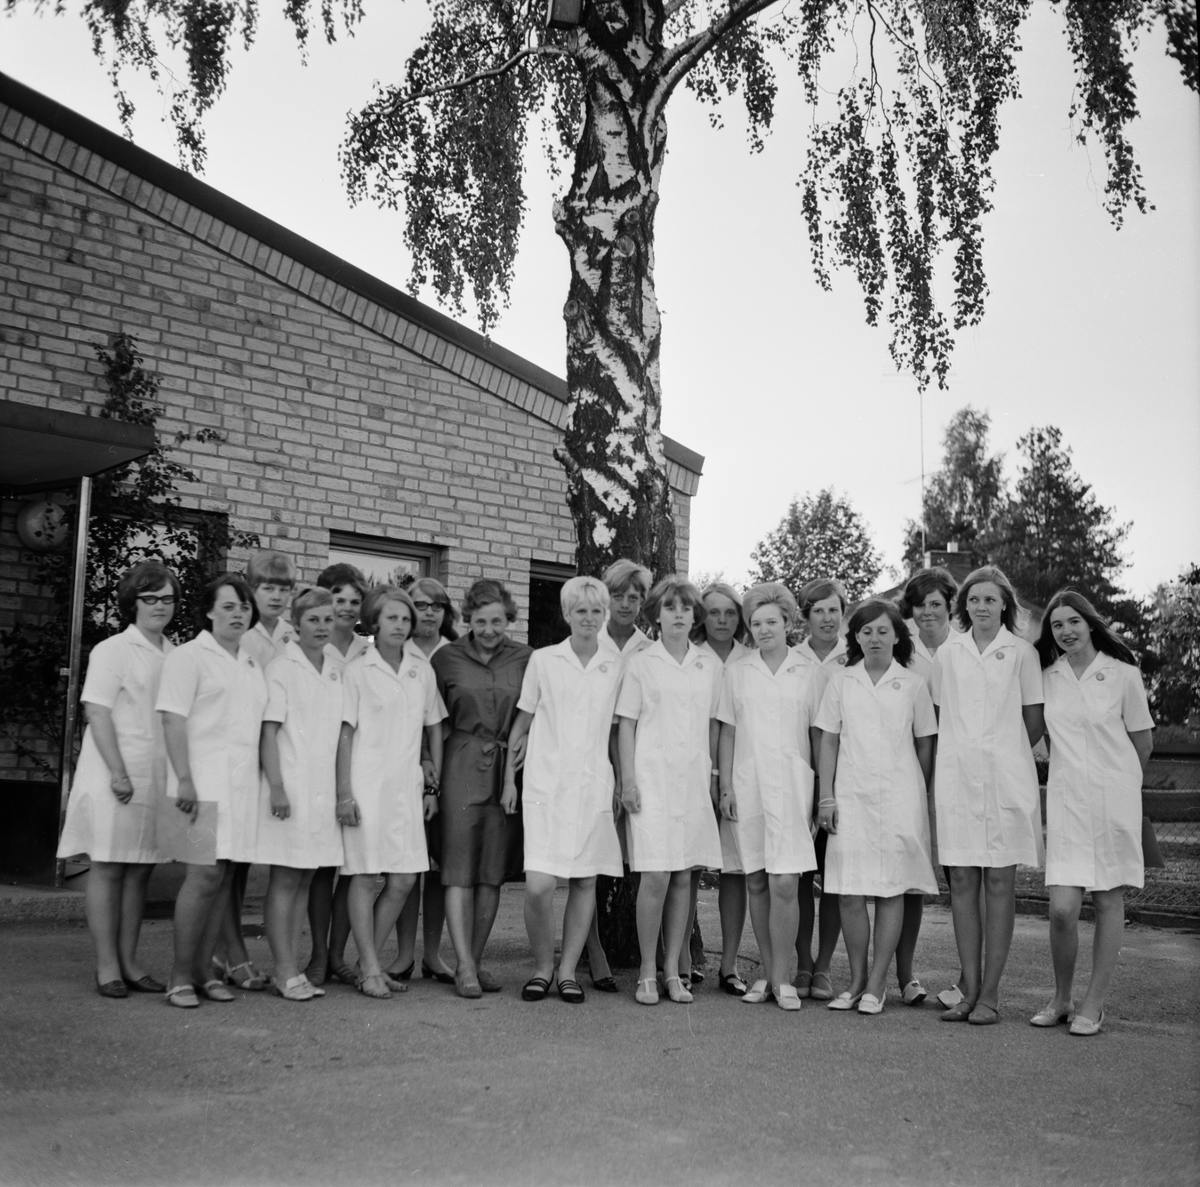 Avslutning sjukvårdsbiträden, sannolikt Tierp, Uppland, juni 1968